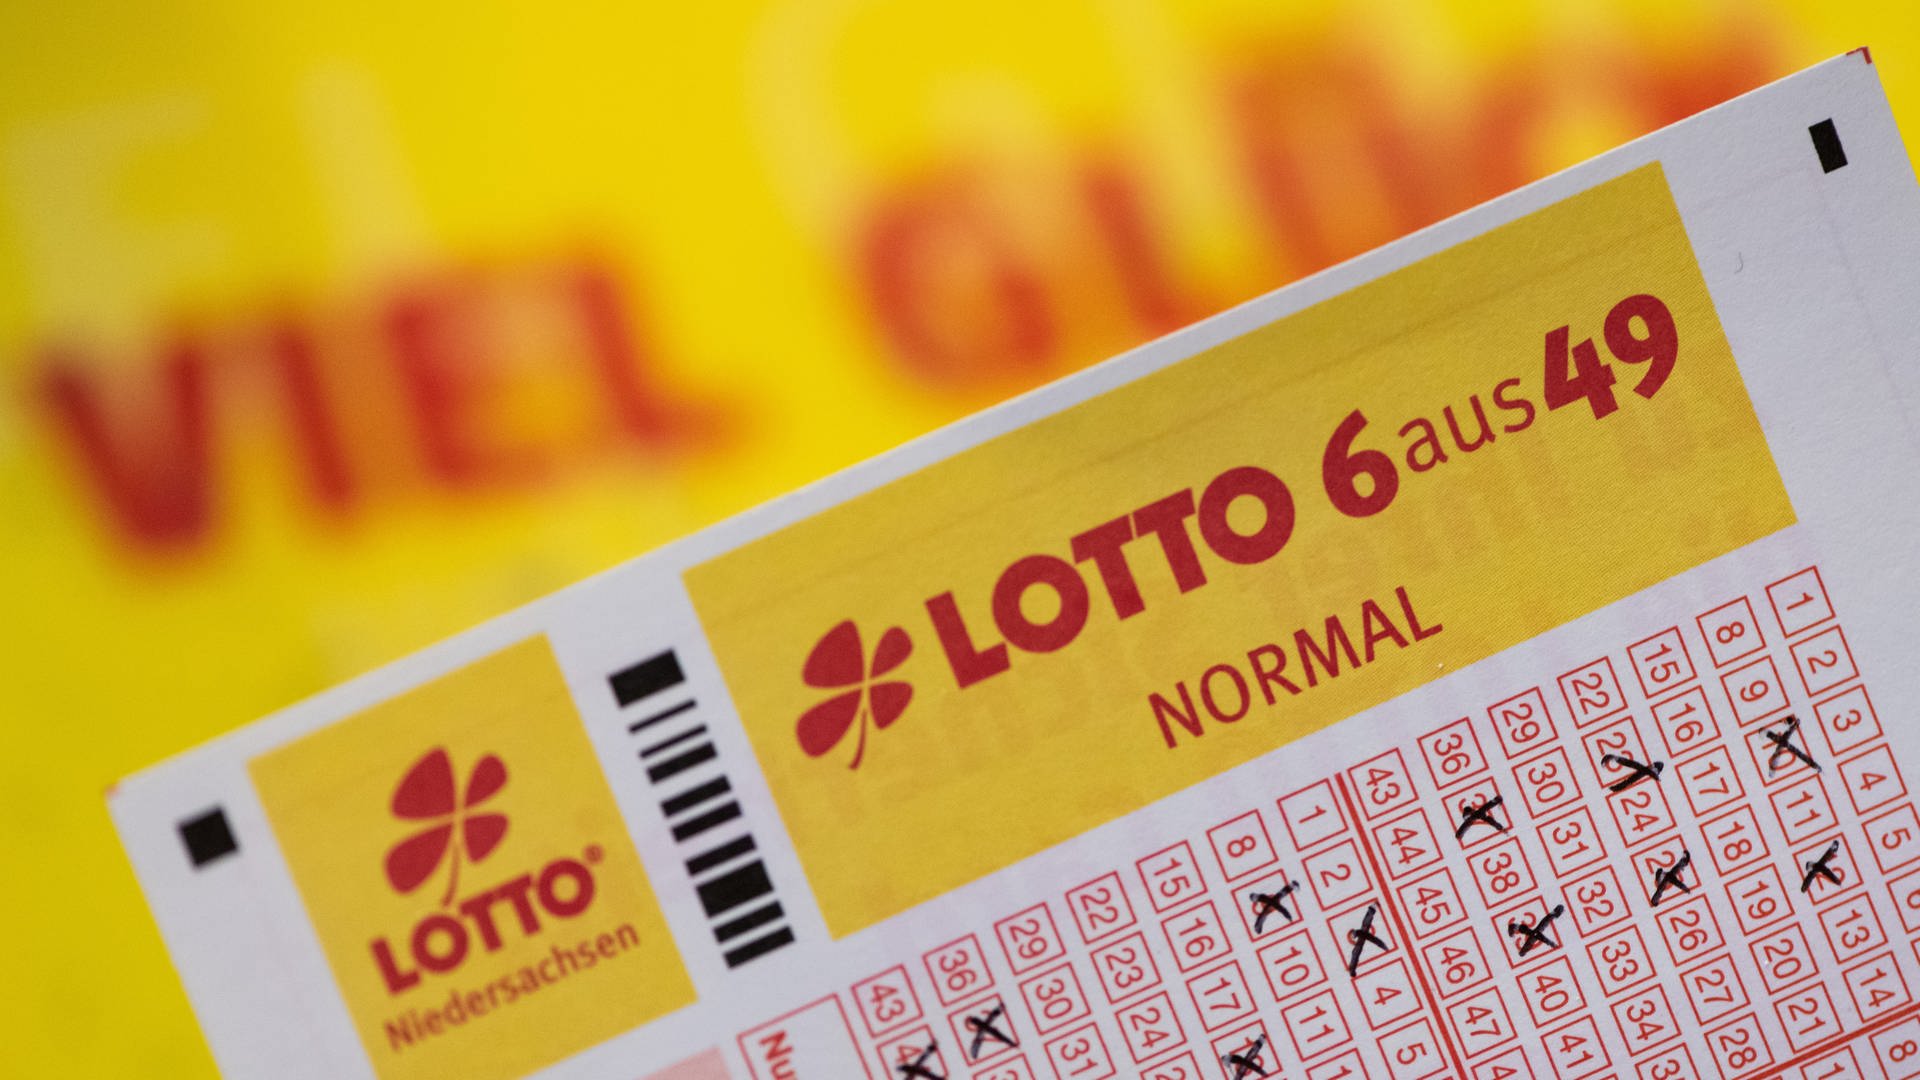 Lottospielen Wird Teurer Hohere Jackpots Angekundigt Swr Aktuell